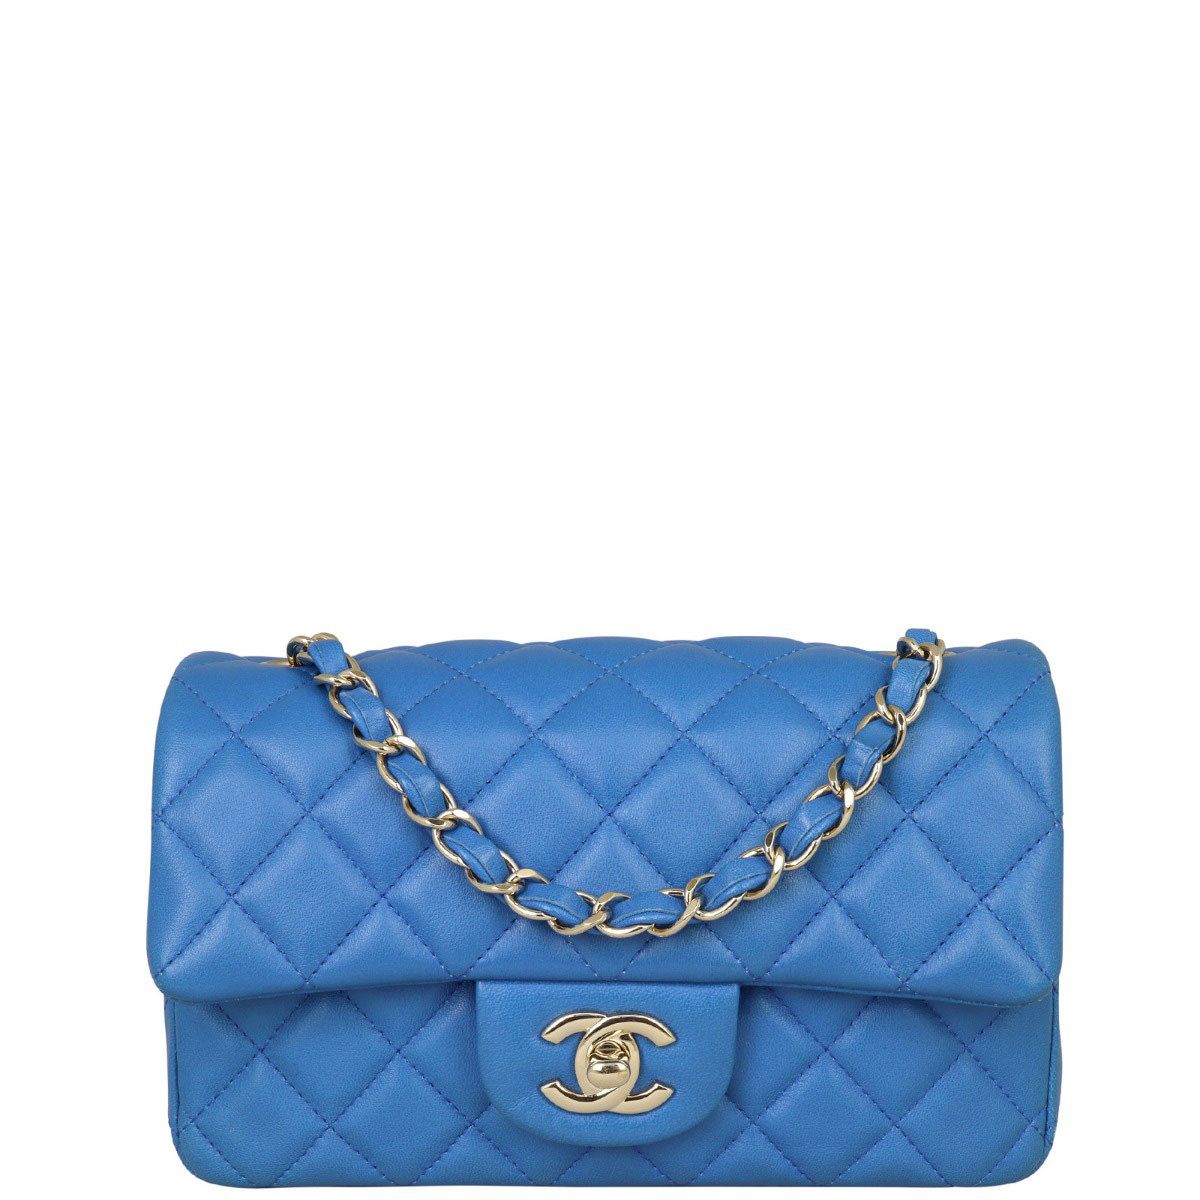 Chanel Blue Classic Rectangular Mini Flap Bag